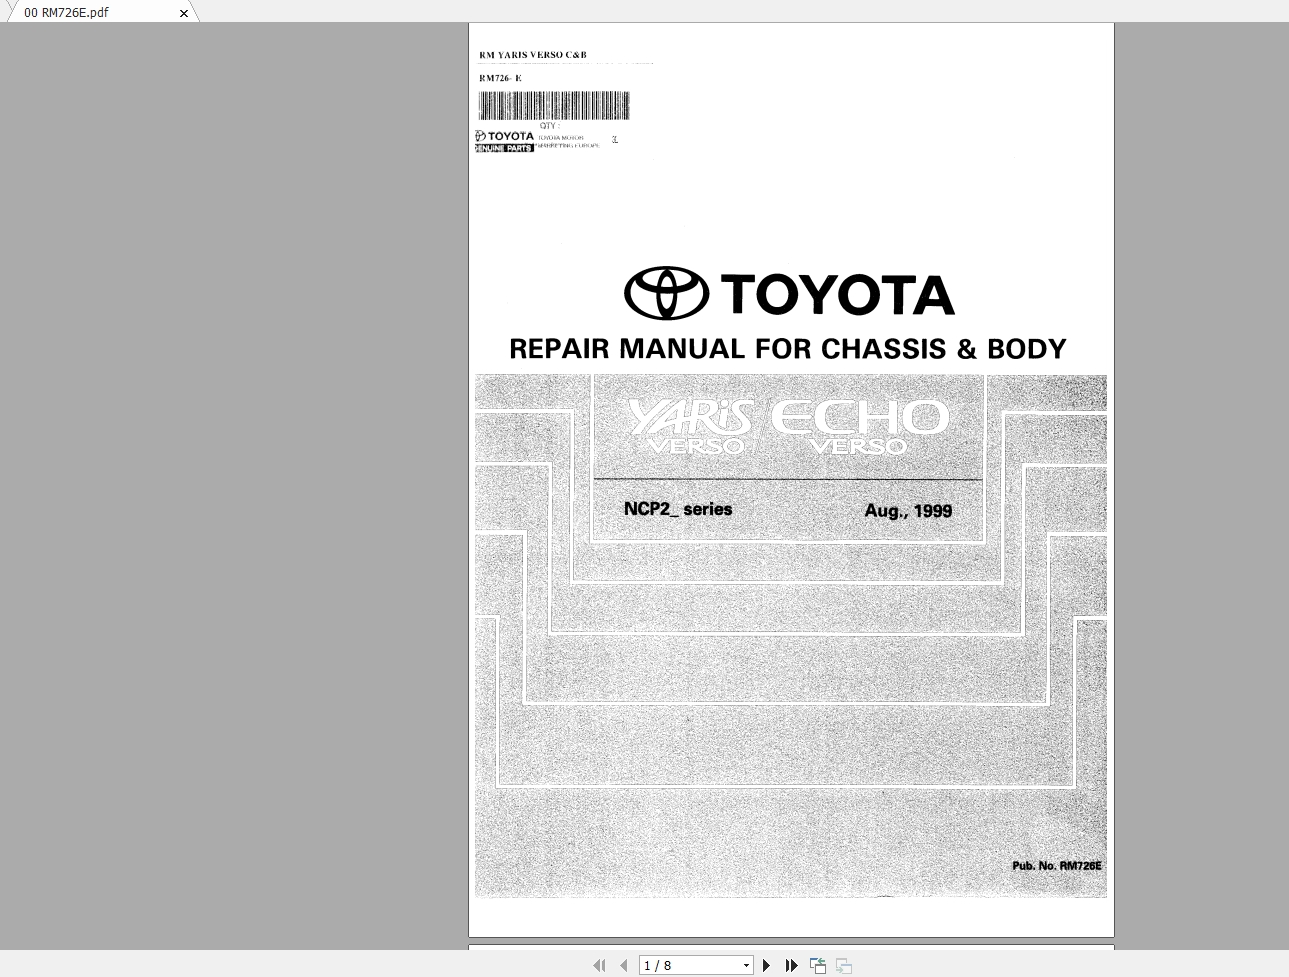 Toyota Yaris Verso 1999 01 Repair Manual Electrical Wiring Diagram Auto Repair Manual Forum Heavy Equipment Forums Download Repair Workshop Manual